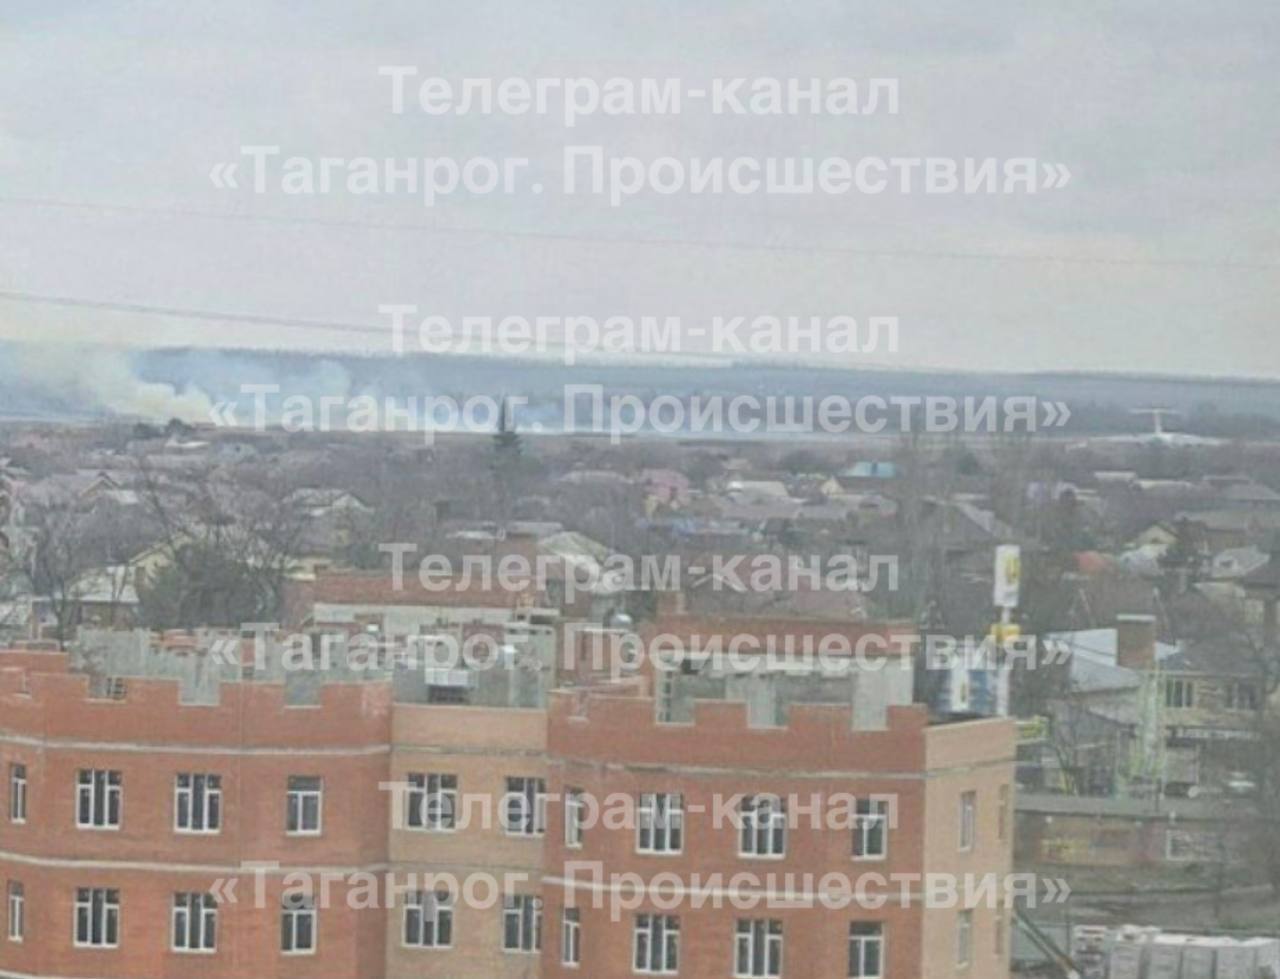 "Затряслись окна": в российском Таганроге прогремел мощный взрыв возле аэропорта. Фото